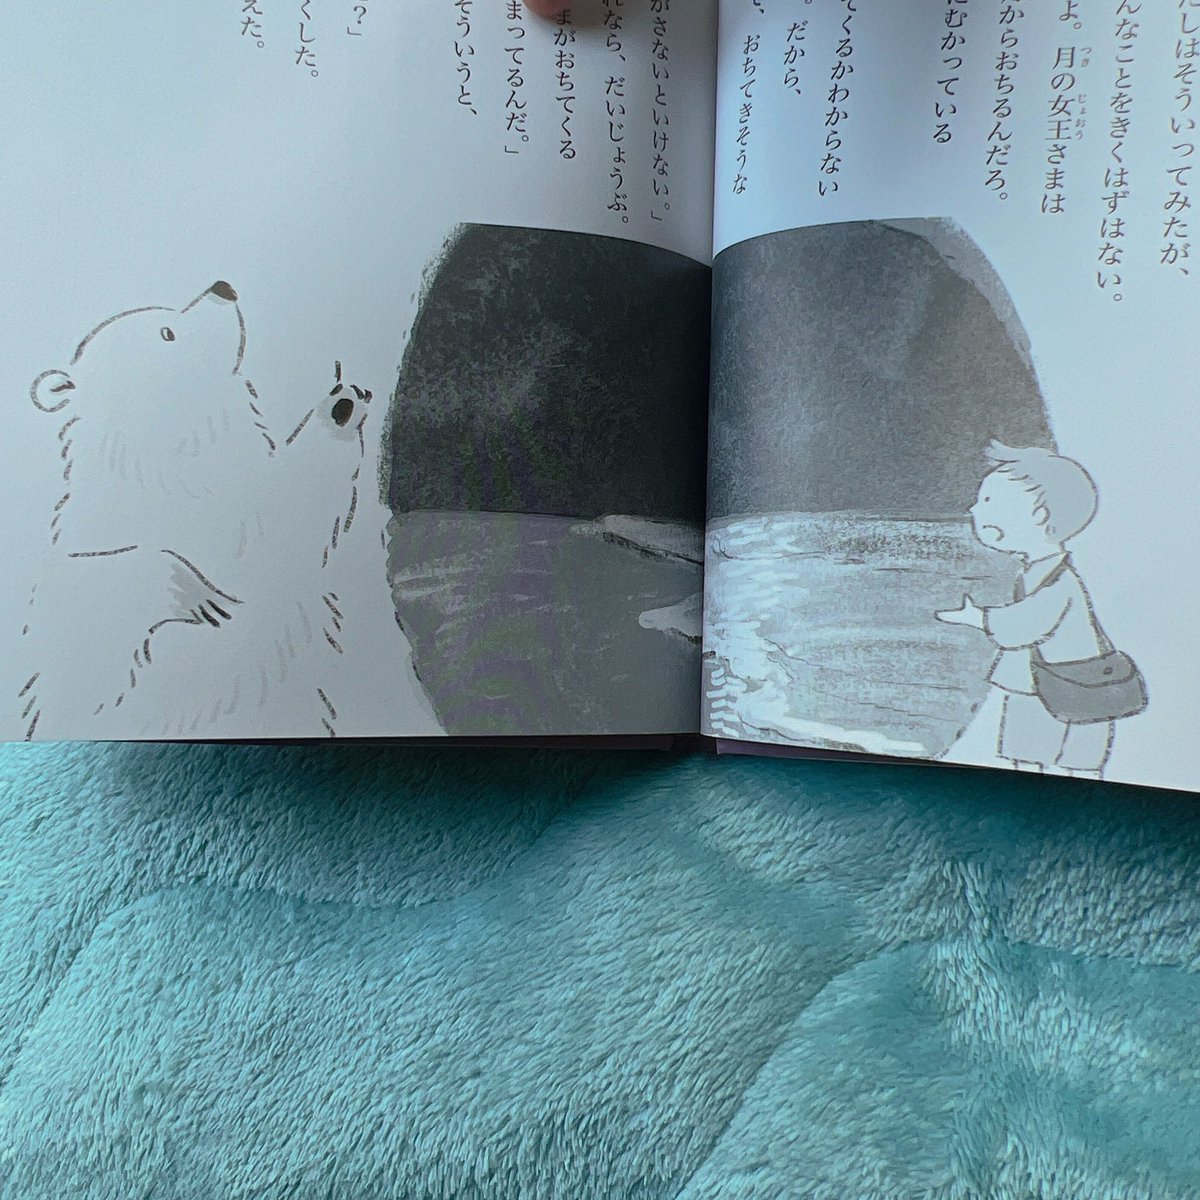 「キュリオと月の女王」【講談社】発売しました!装画と中面の挿絵を担当しました。挿絵は前見開きに入っており、一部カラーもあります☺️
ルドルフとイッパイアッテナシリーズの斉藤洋先生のシリーズになります。
1人と1匹の不思議な旅を楽しんでください🐾👣 https://t.co/bE5LUi1JvY 